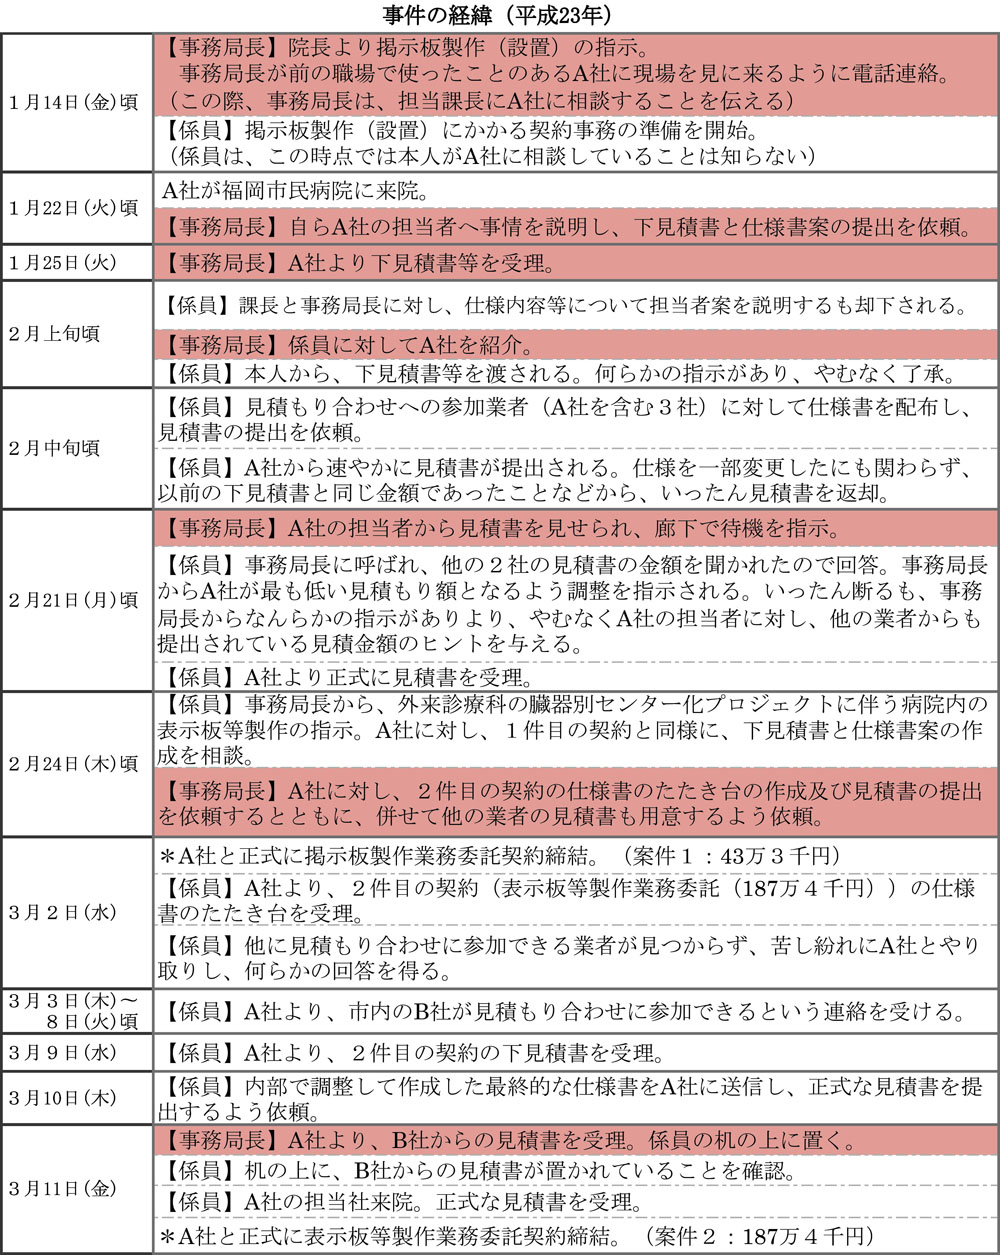 http://hunter-investigate.jp/news/2015/11/26/20151126_h01-01.jpg